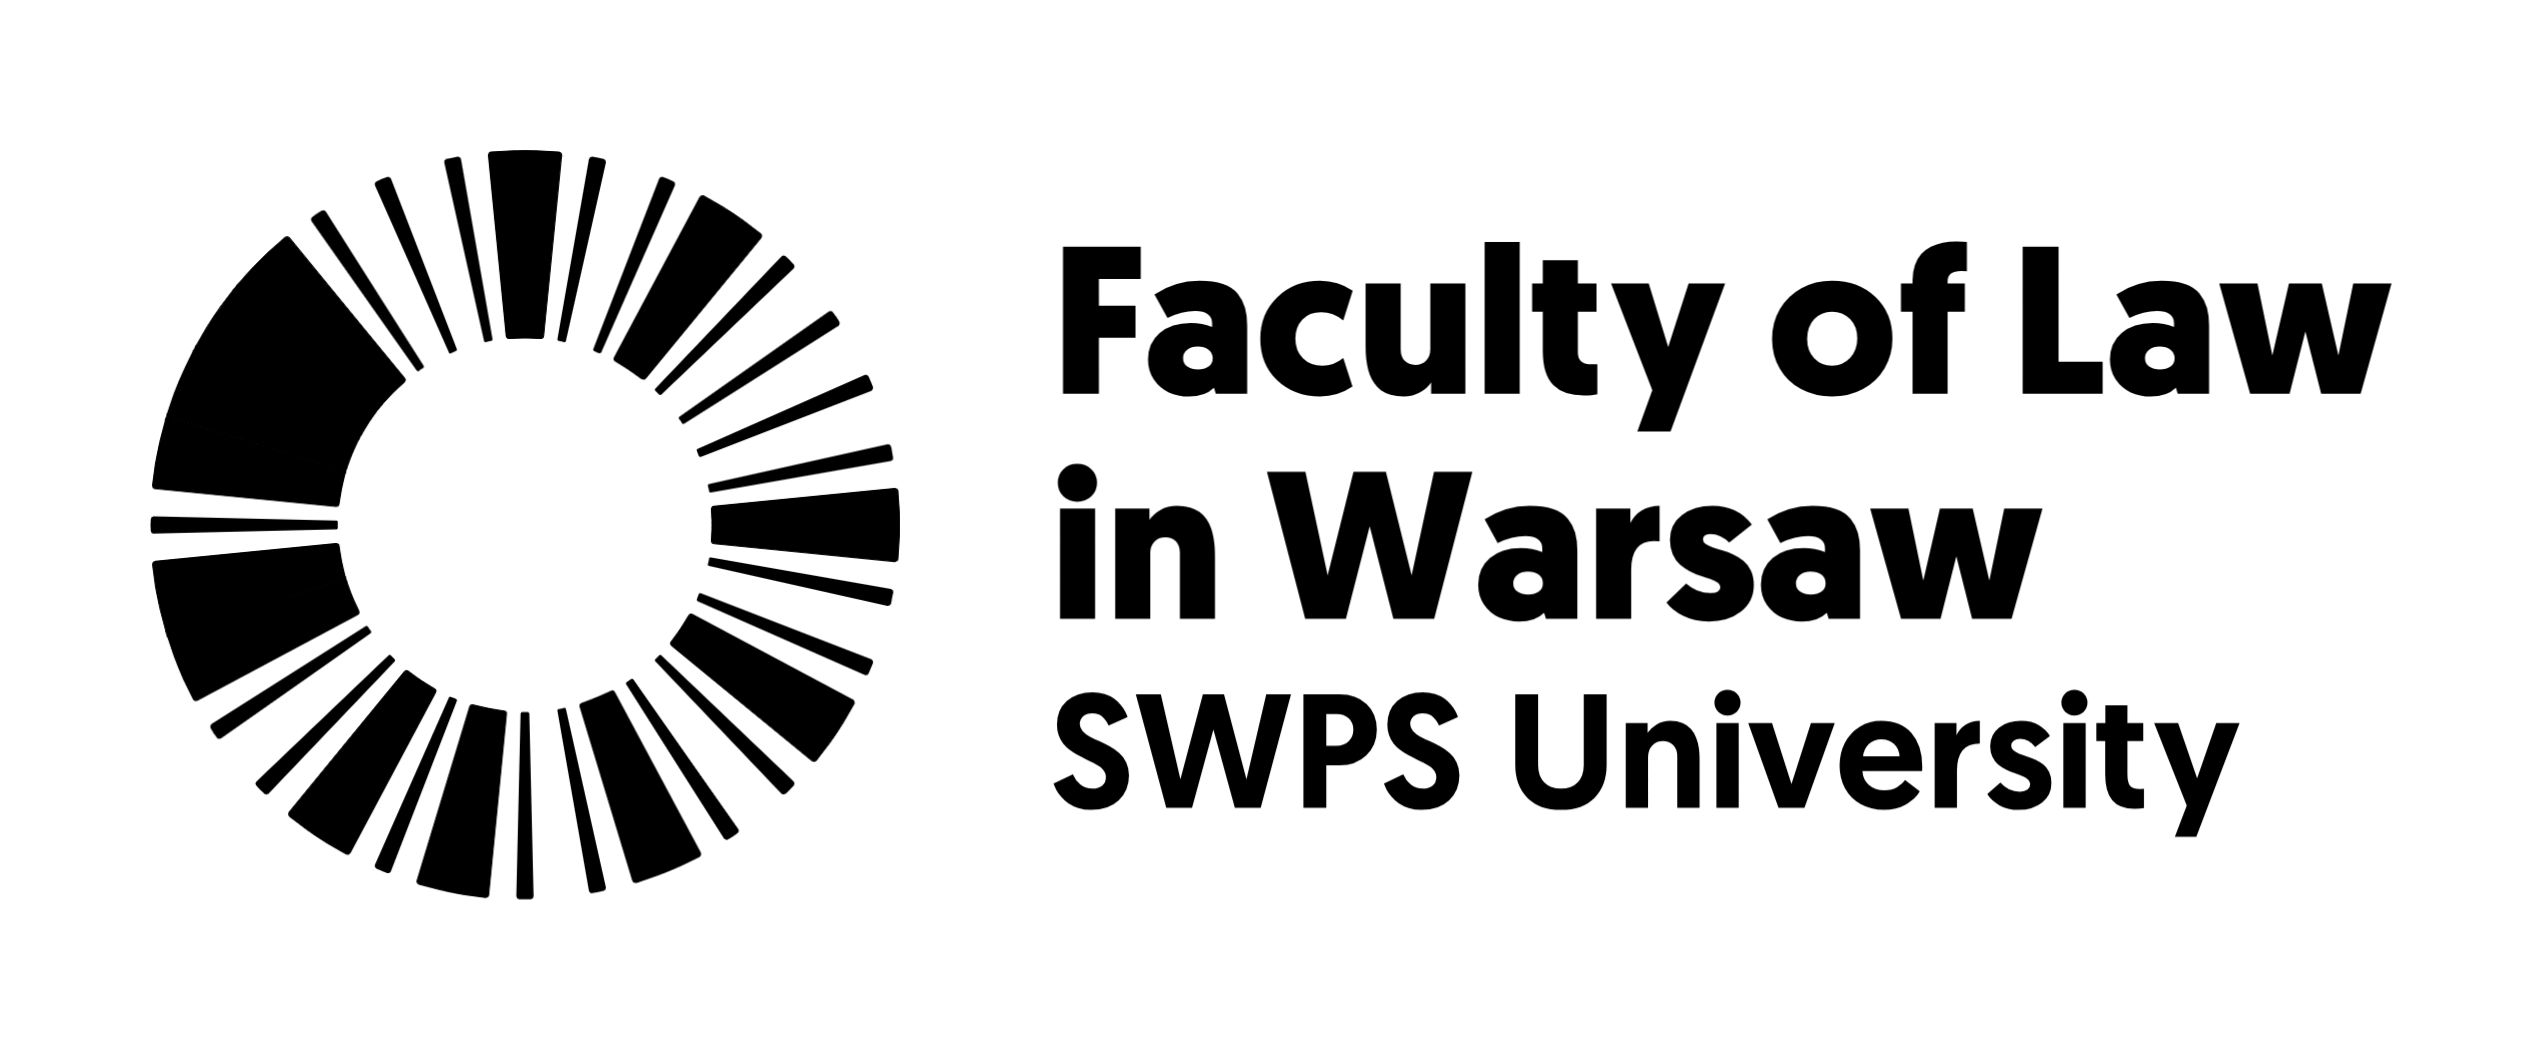 SWPS University Faculty of Law